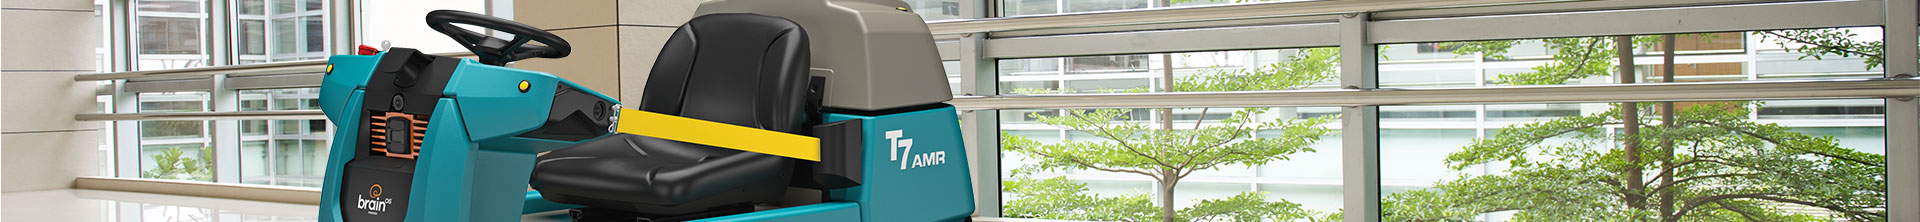 La restregadora robotizada de pisos T7AMR limpiando un hospital